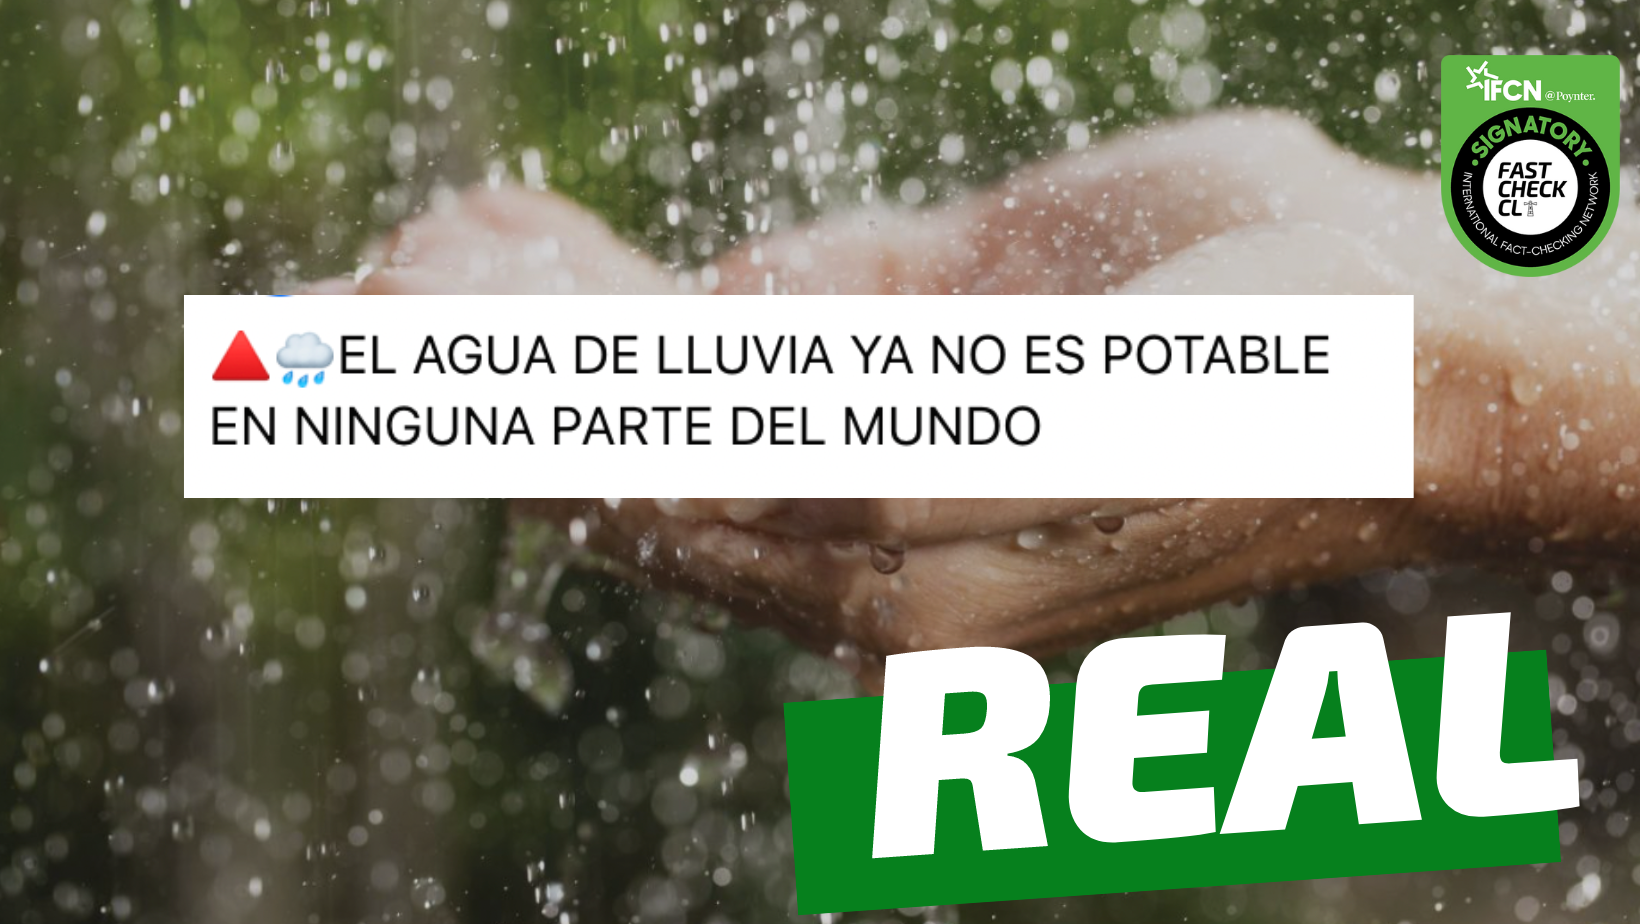 You are currently viewing “El agua de lluvia ya no es potable en ninguna parte del mundo”: #Real